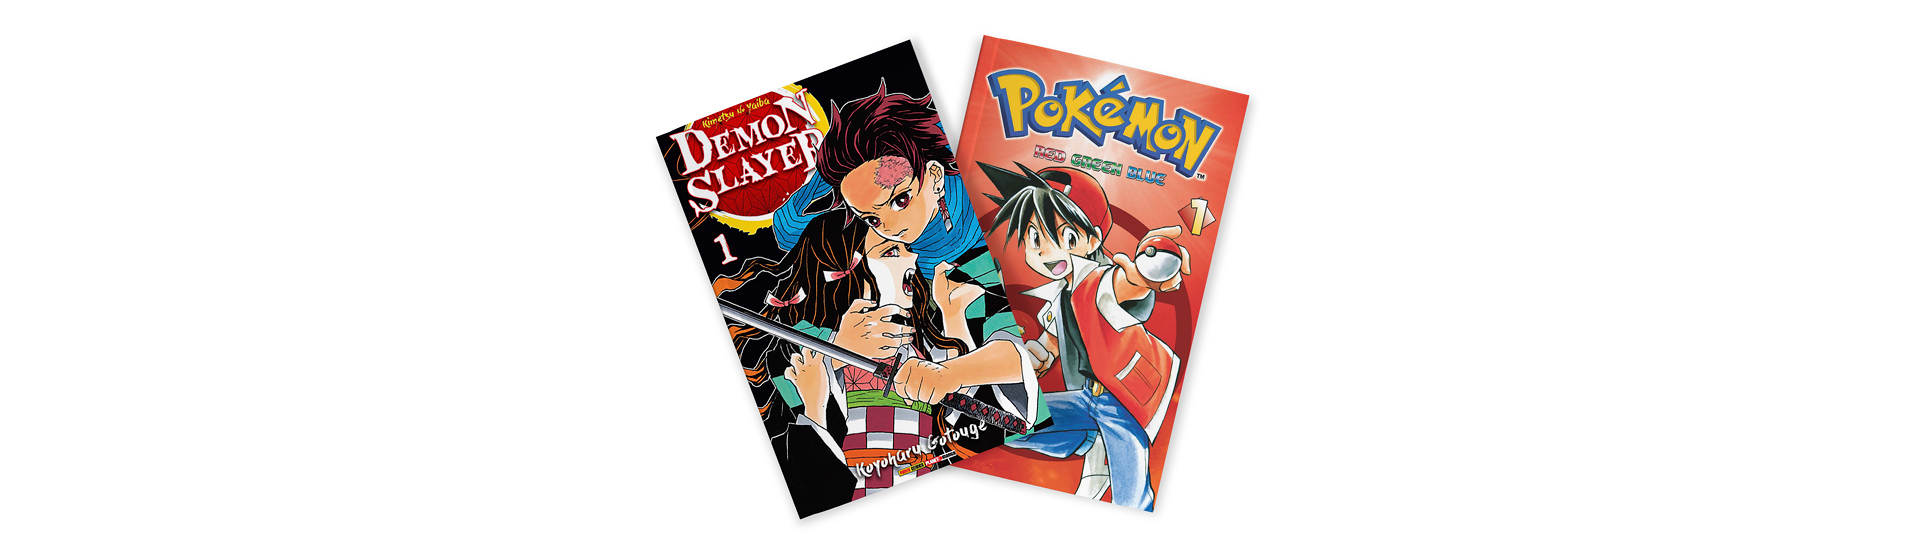 Imagem da capa de dois mangás em fundo branco: Demon Slayer, de Koyoharu Gotouge e Pokemon RGB, de Hidenori Kusaka e Mato